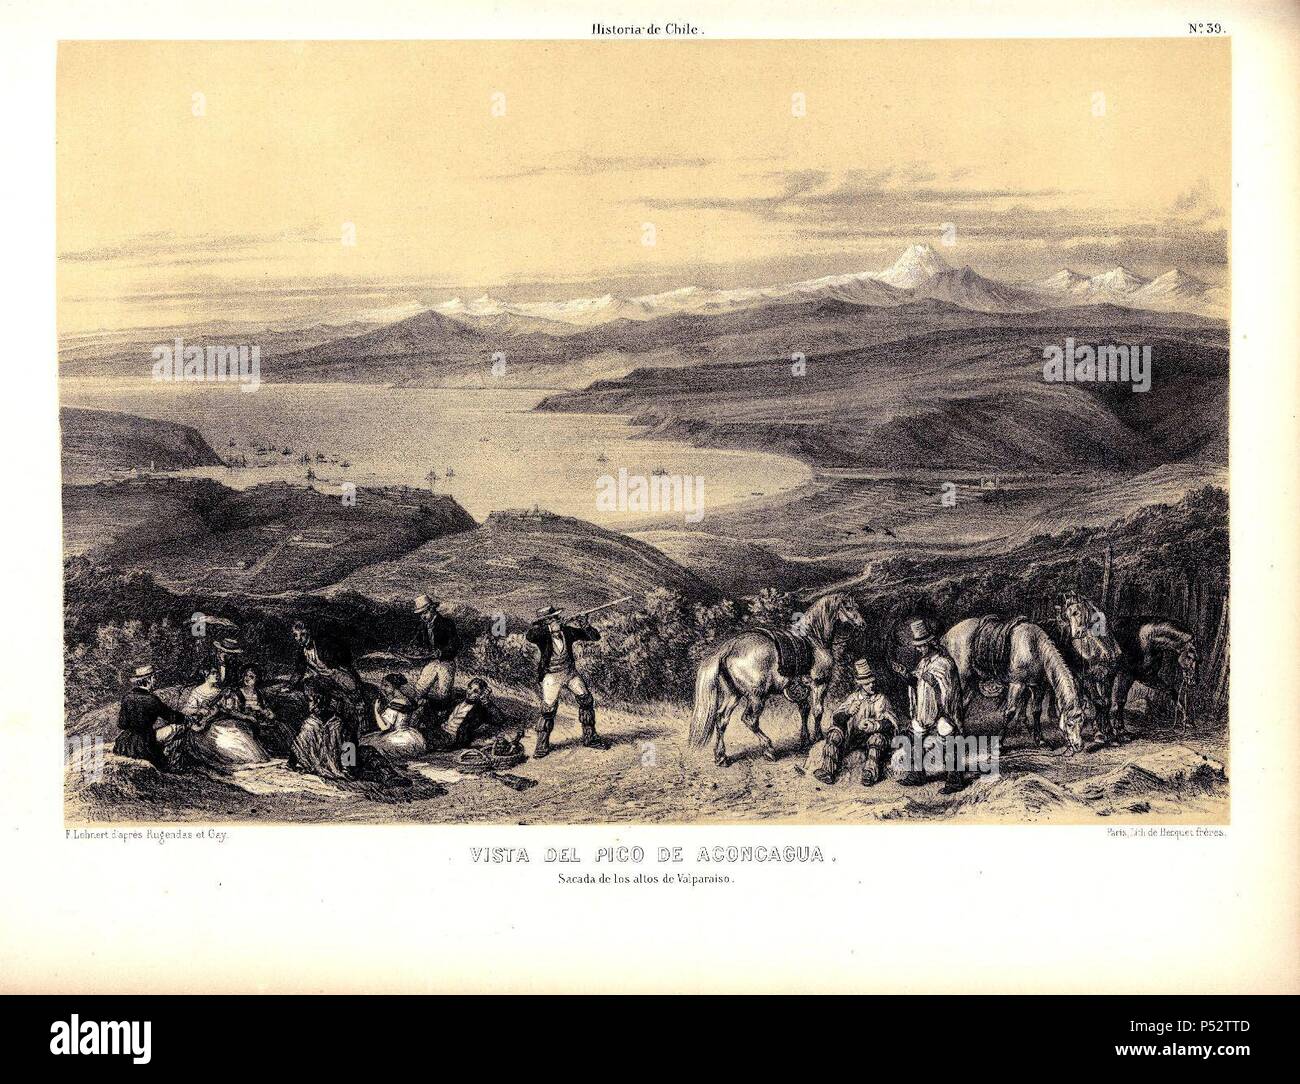 VISTA DEL PICO DE ACONCAGUA EN ATLAS DE LA HISTORIA FISICA Y POLITICA DE CHILE, 1854. Author: Claudio Gay (1800-1873). Location: BIBLIOTECA NACIONAL-COLECCION, MADRID, SPAIN. Stock Photo